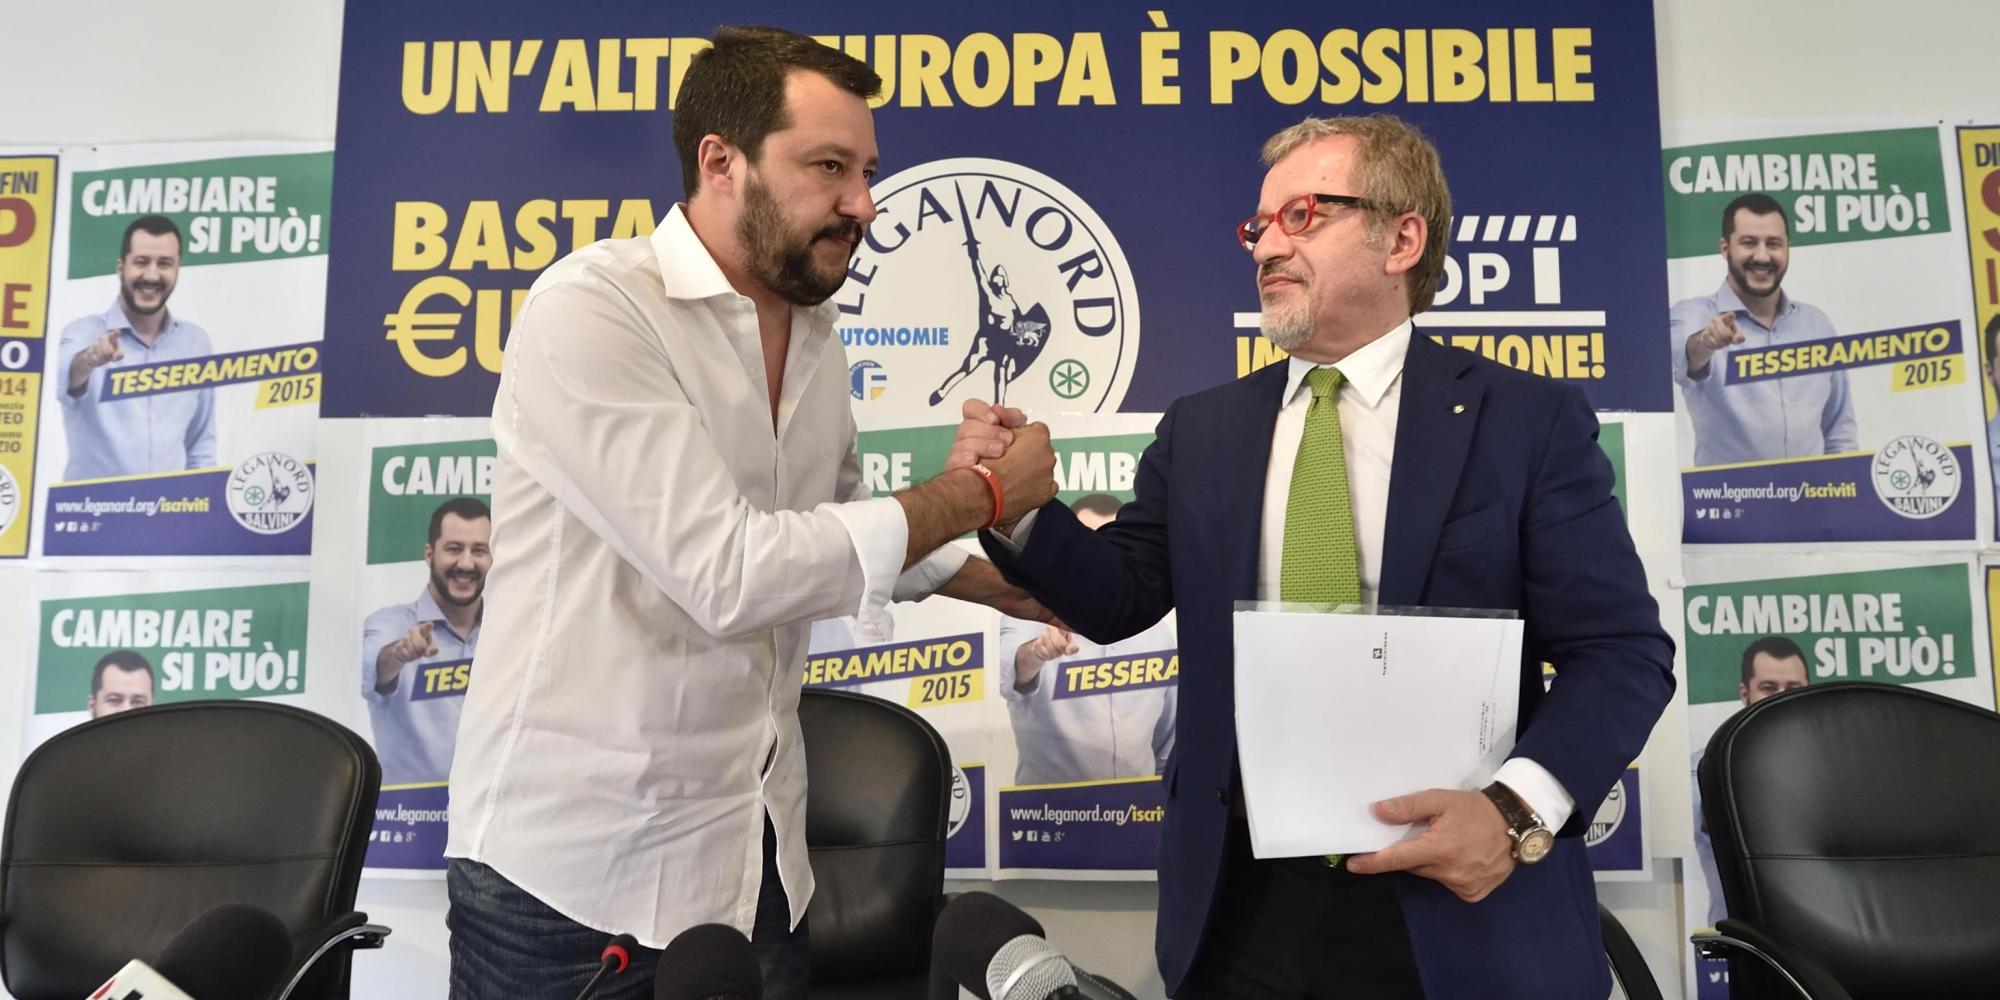 Lombardia, tangenti alla Regione: dopo l’arresto del vicepresidente Mantovani, in bilico la giunta Maroni. Salvini contro i giudici: attacco politico